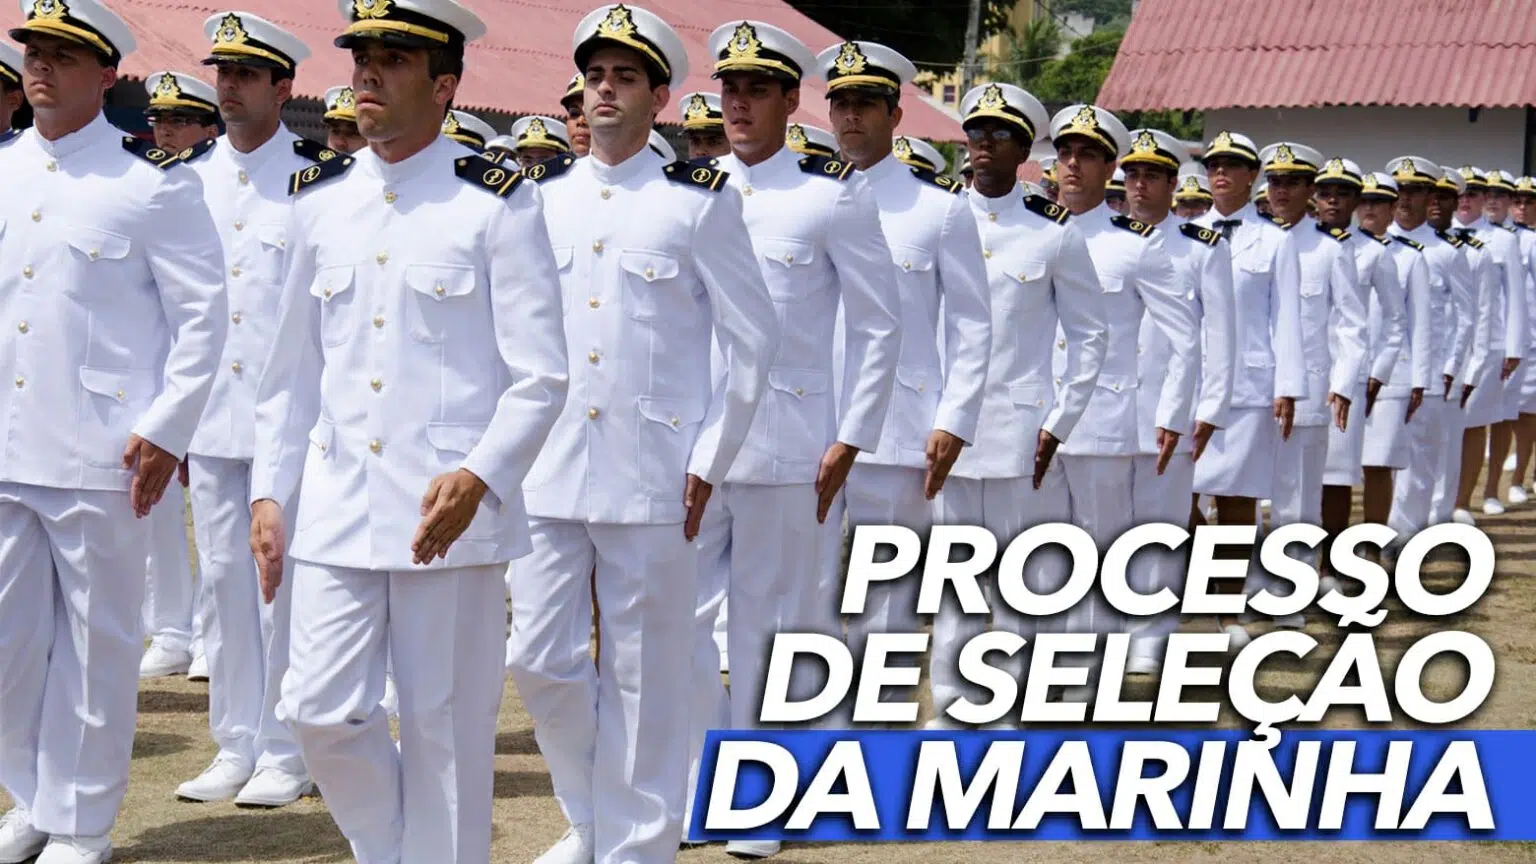 Processo de seleção da Marinha para trabalhar em submarinos; remuneração inicial de R$ 3.825